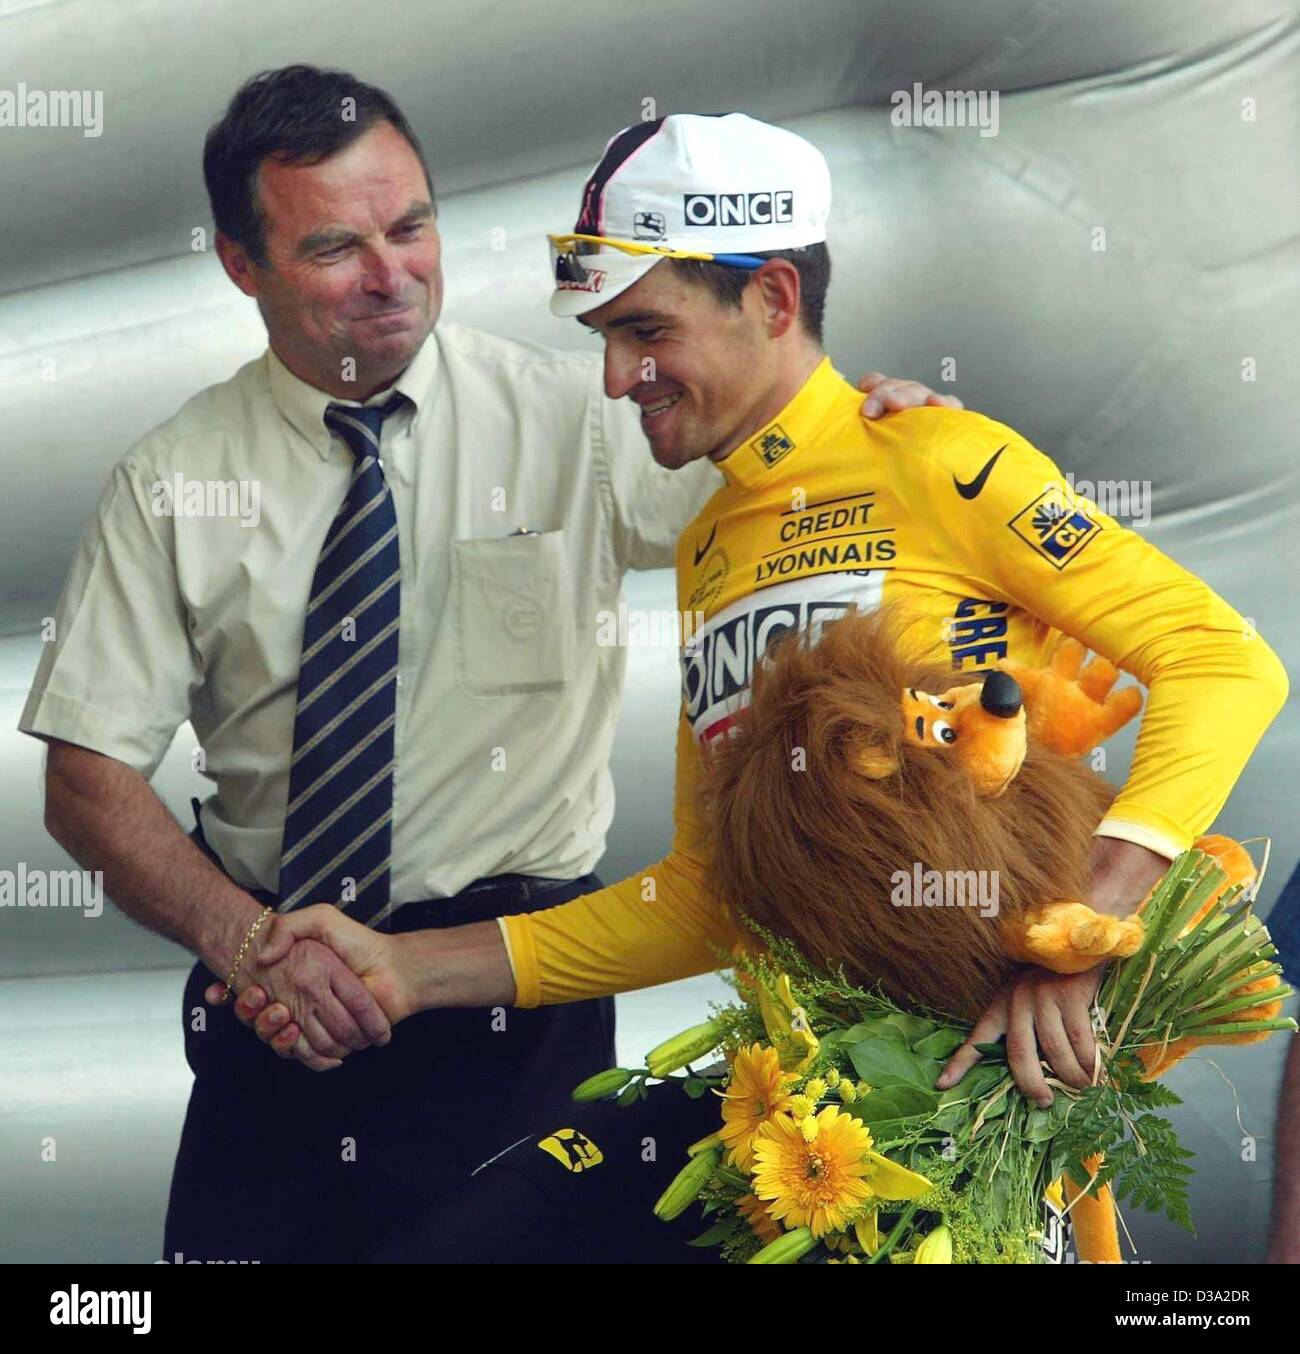 (Dpa) - El cinco veces campeón del Tour de Francia Bernard Hinault (L) se da la mano con el ciclista español Igor González de Galdeano del equipo Once-Ersoki quien viste el maillot amarillo durante la 9ª etapa del Tour de Francia en Pont-Scorff, 15 de julio de 2002. Foto de stock